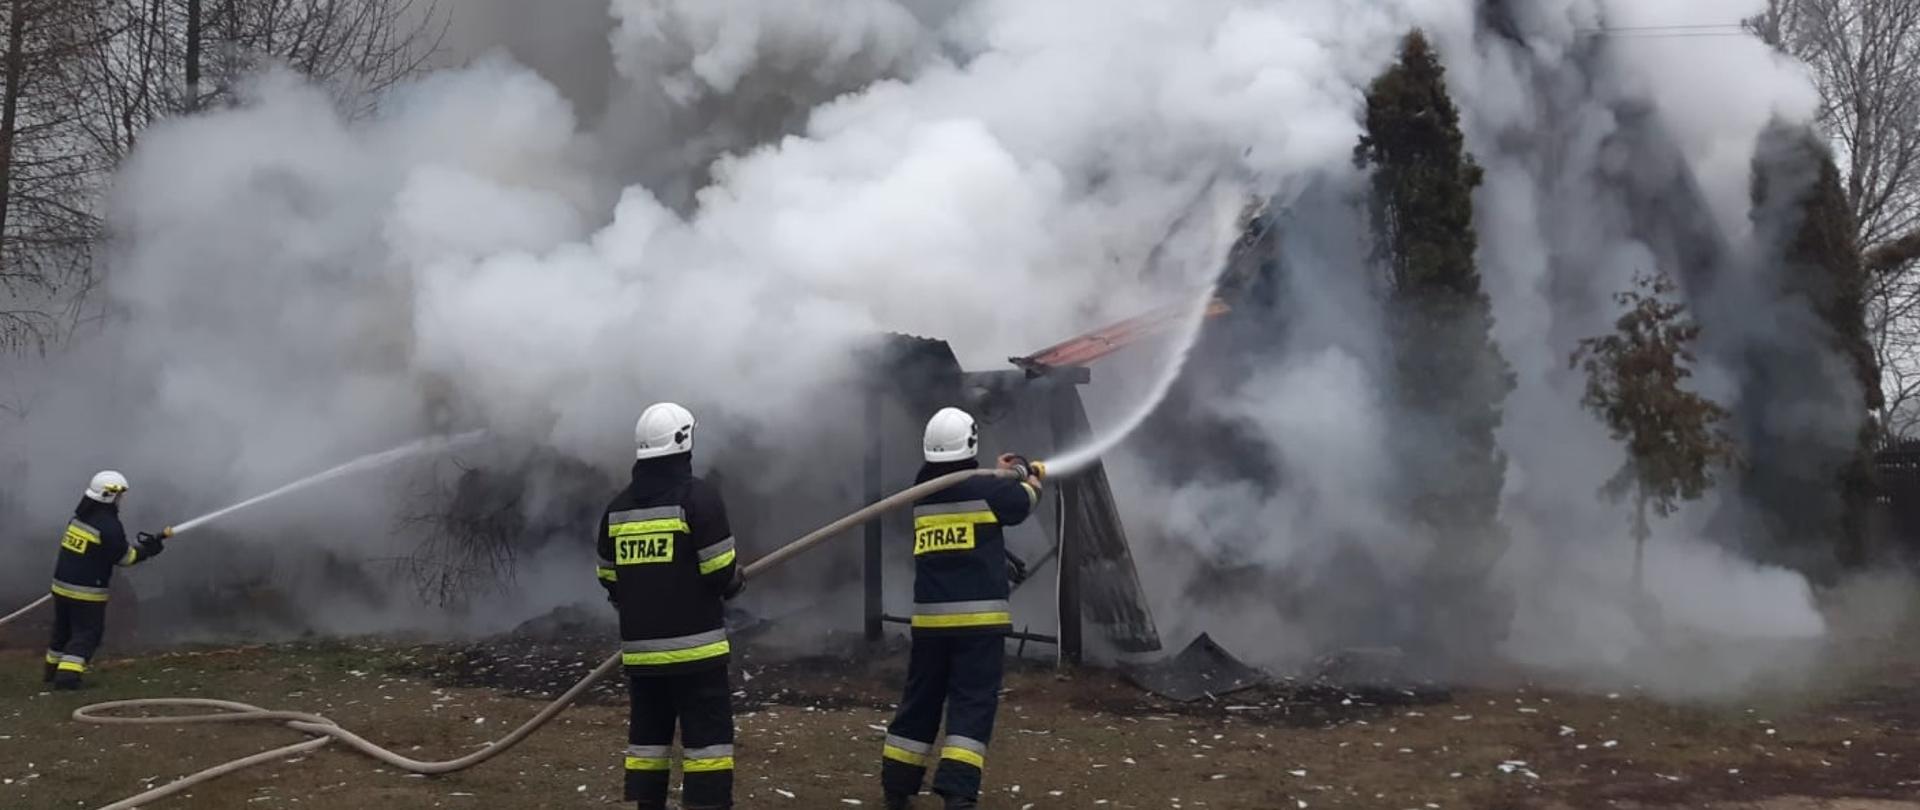 Zdjęcie obrazuje 3 strażaków lejących wodę z węży na palący się budynek, który jest objęty kłębami dymu. 